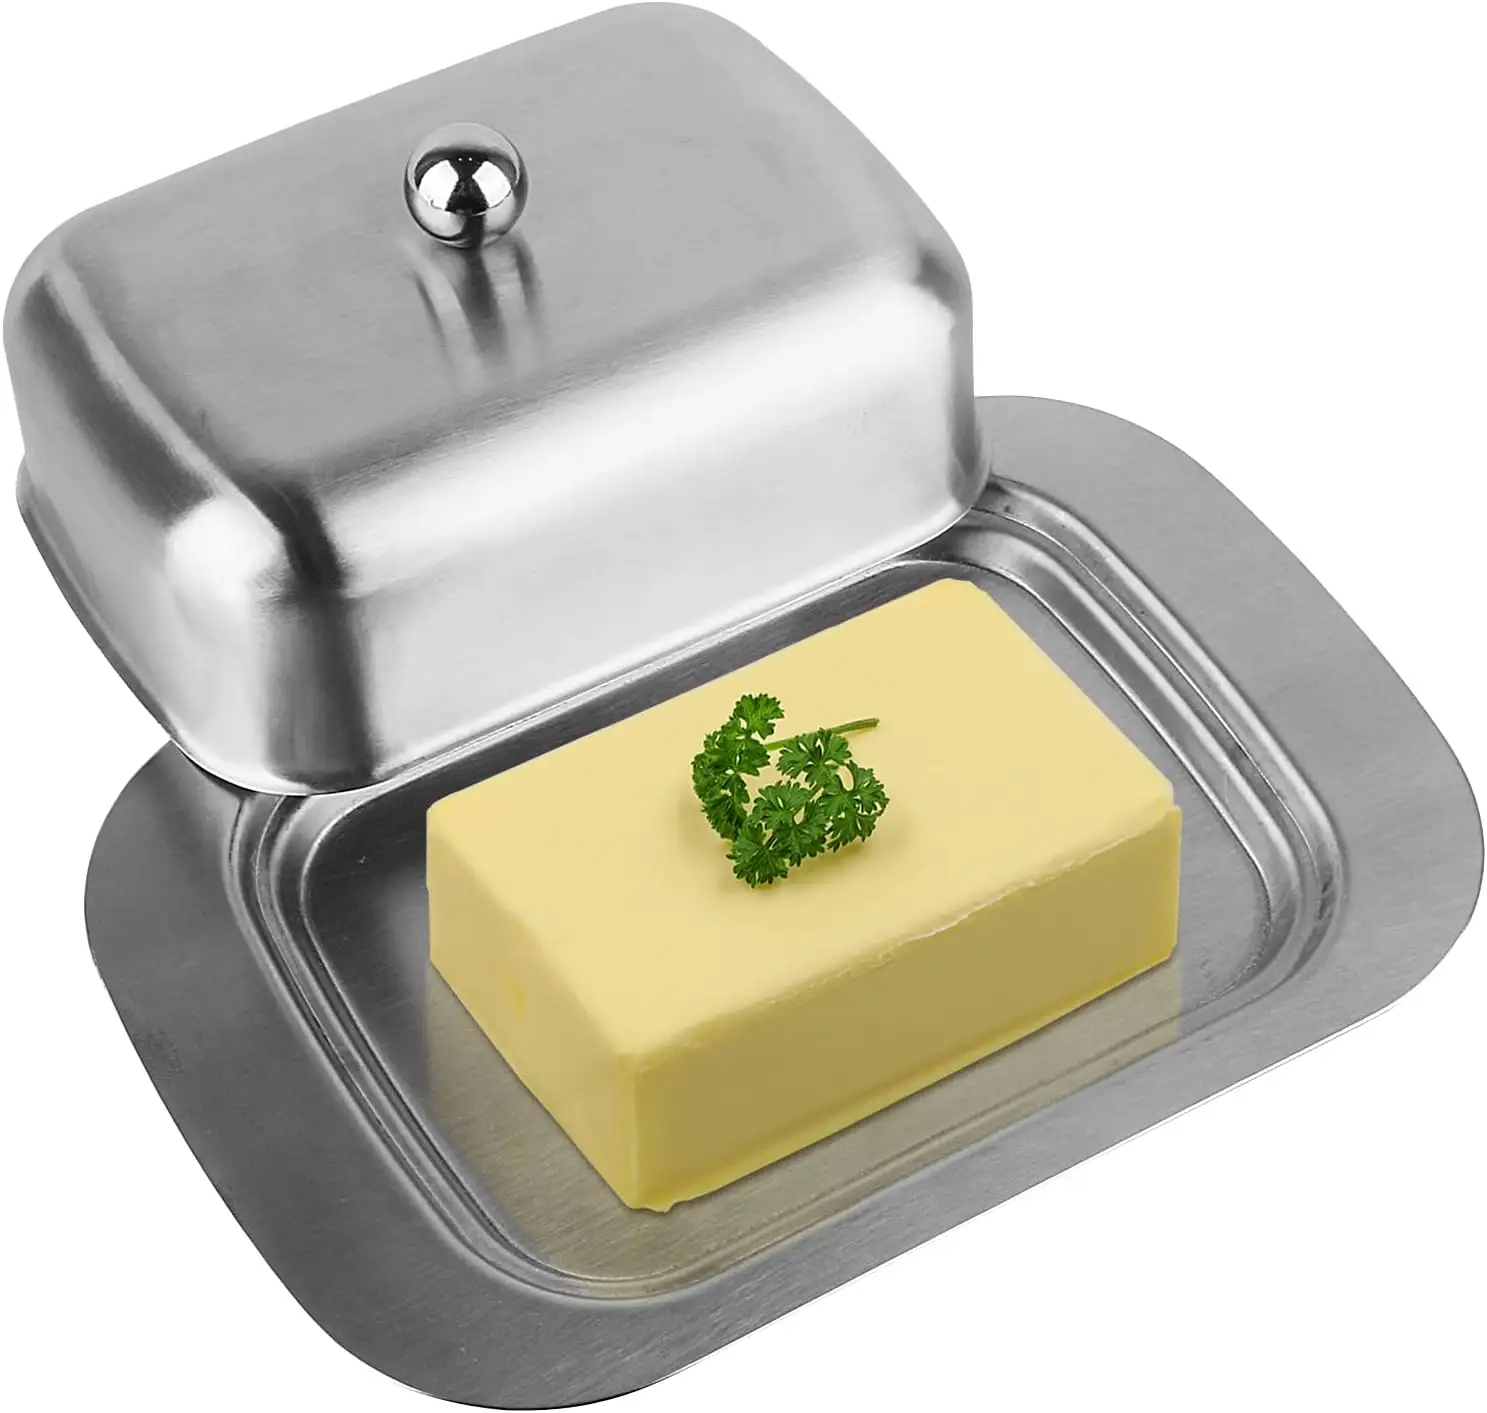 주방 홈 요리 스테인레스 스틸 버터 접시 430 스테인레스 스틸 버터 접시 신선한 버터를 유지